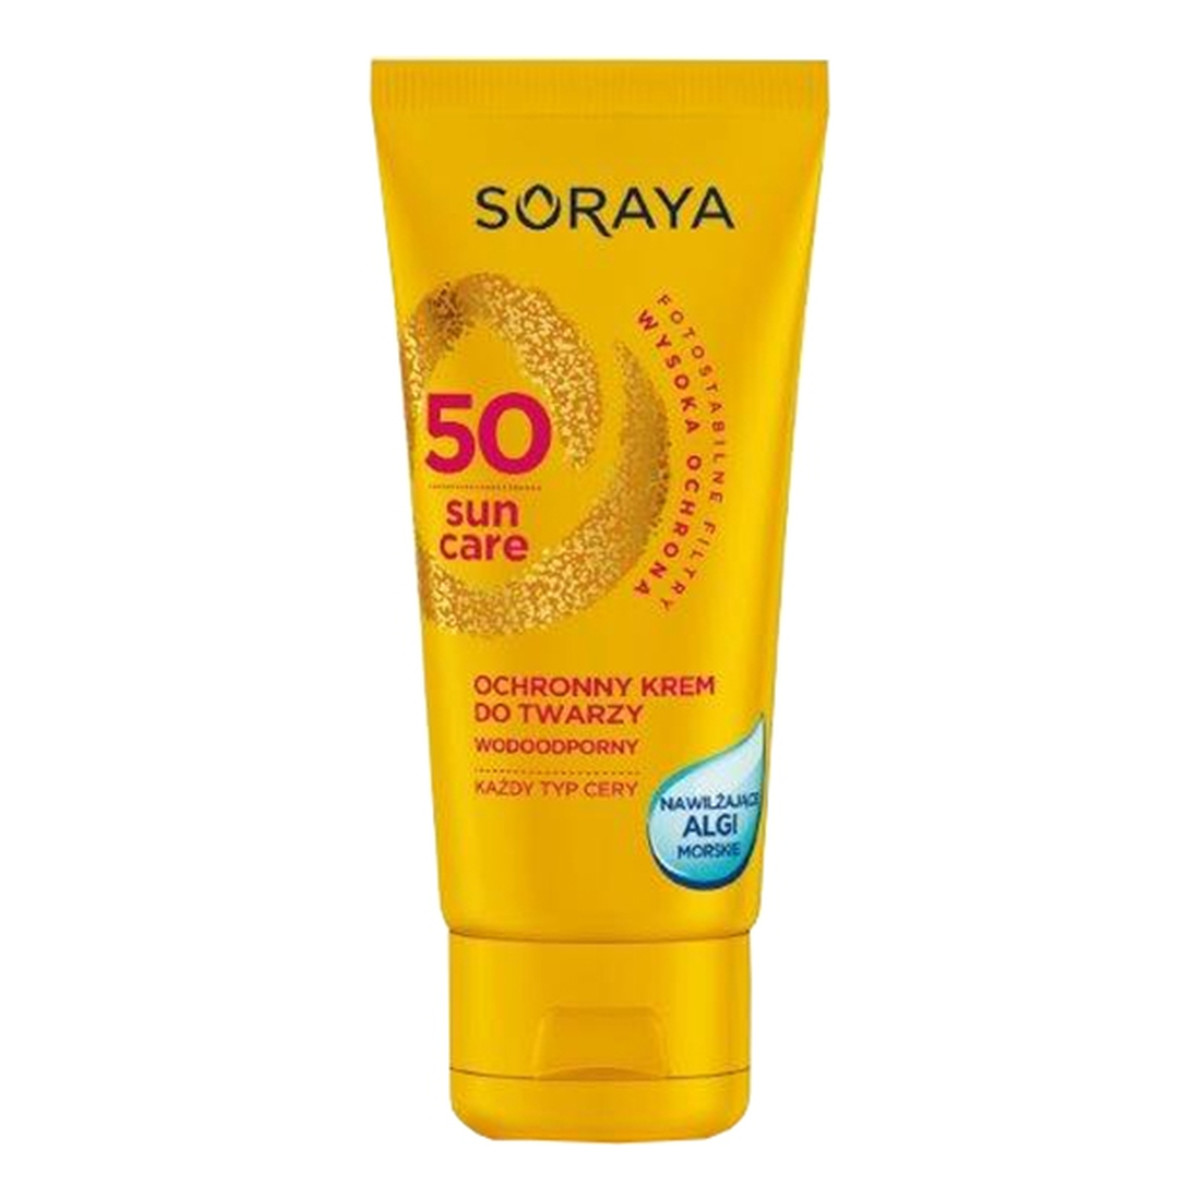 Soraya Sun Care Wodoodporny ochronny krem do twarzy nawilżające algi SPF 50 50ml